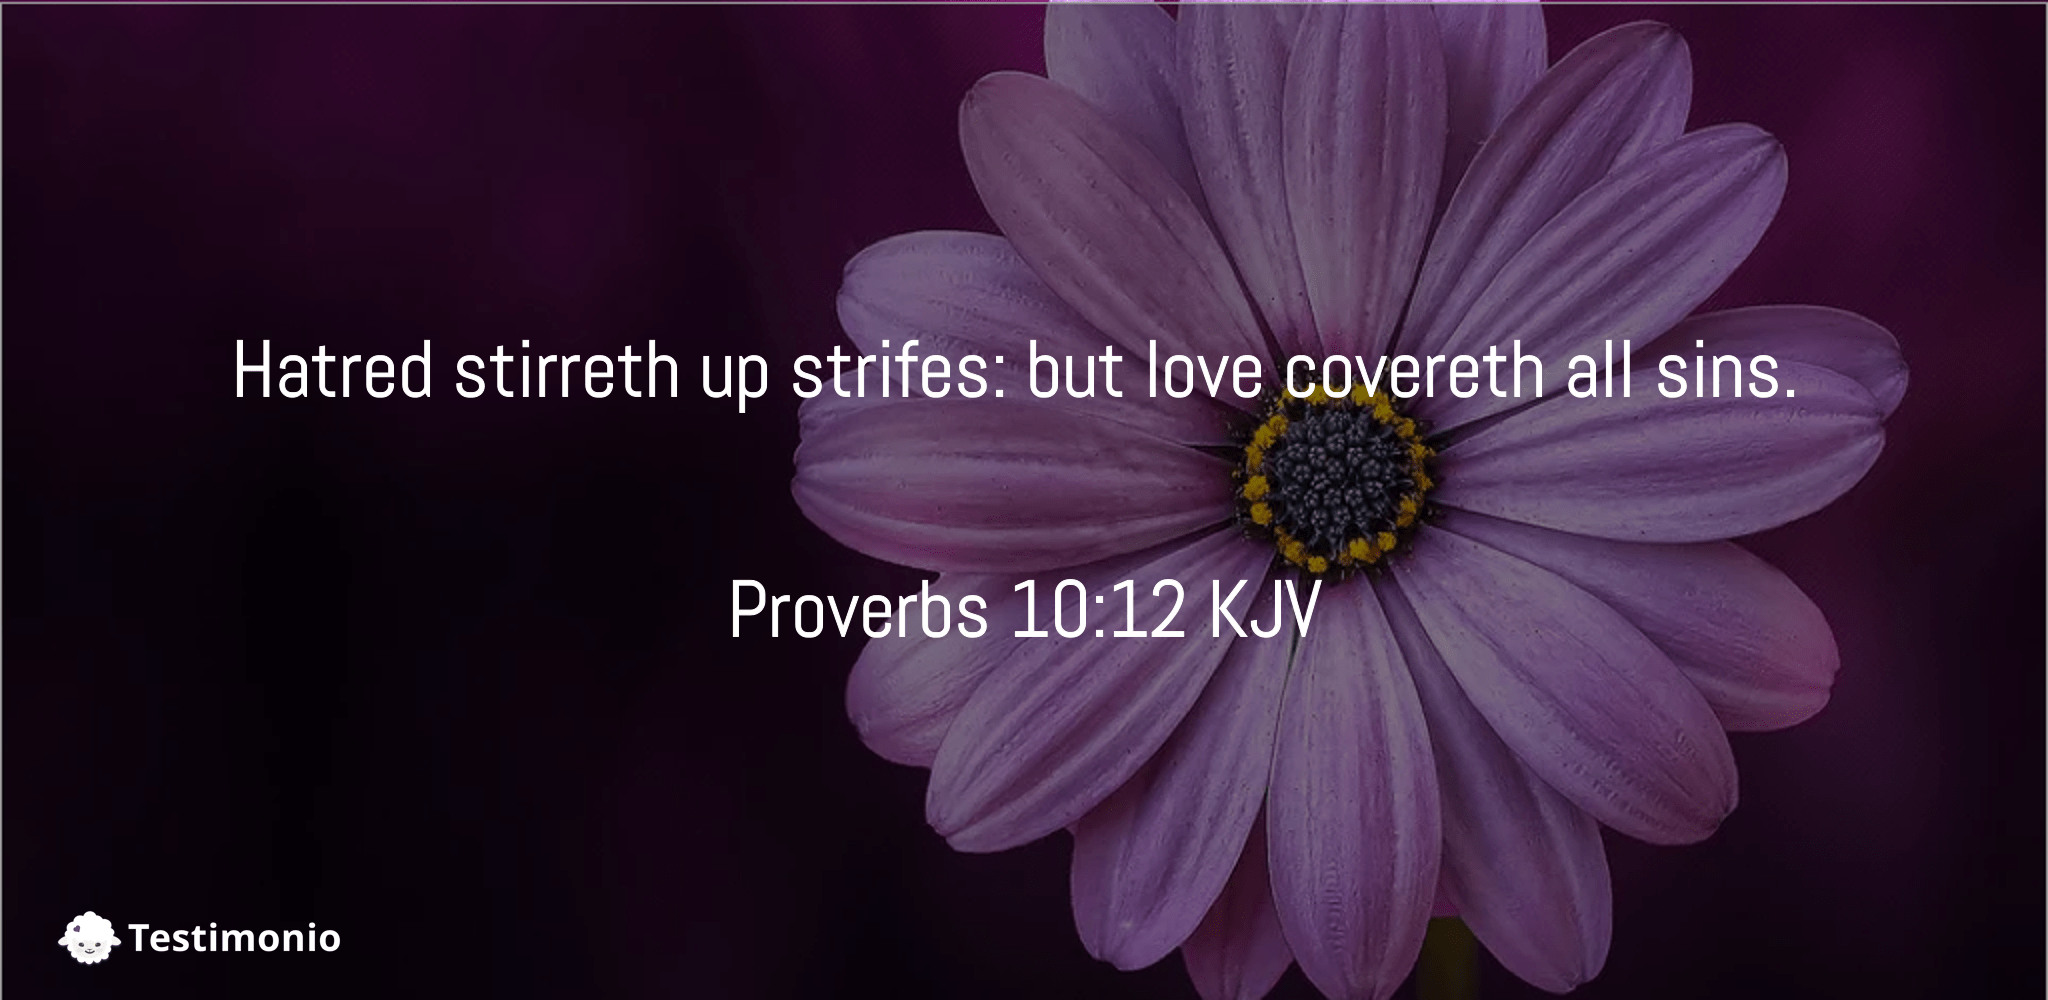 proverbs-10-12